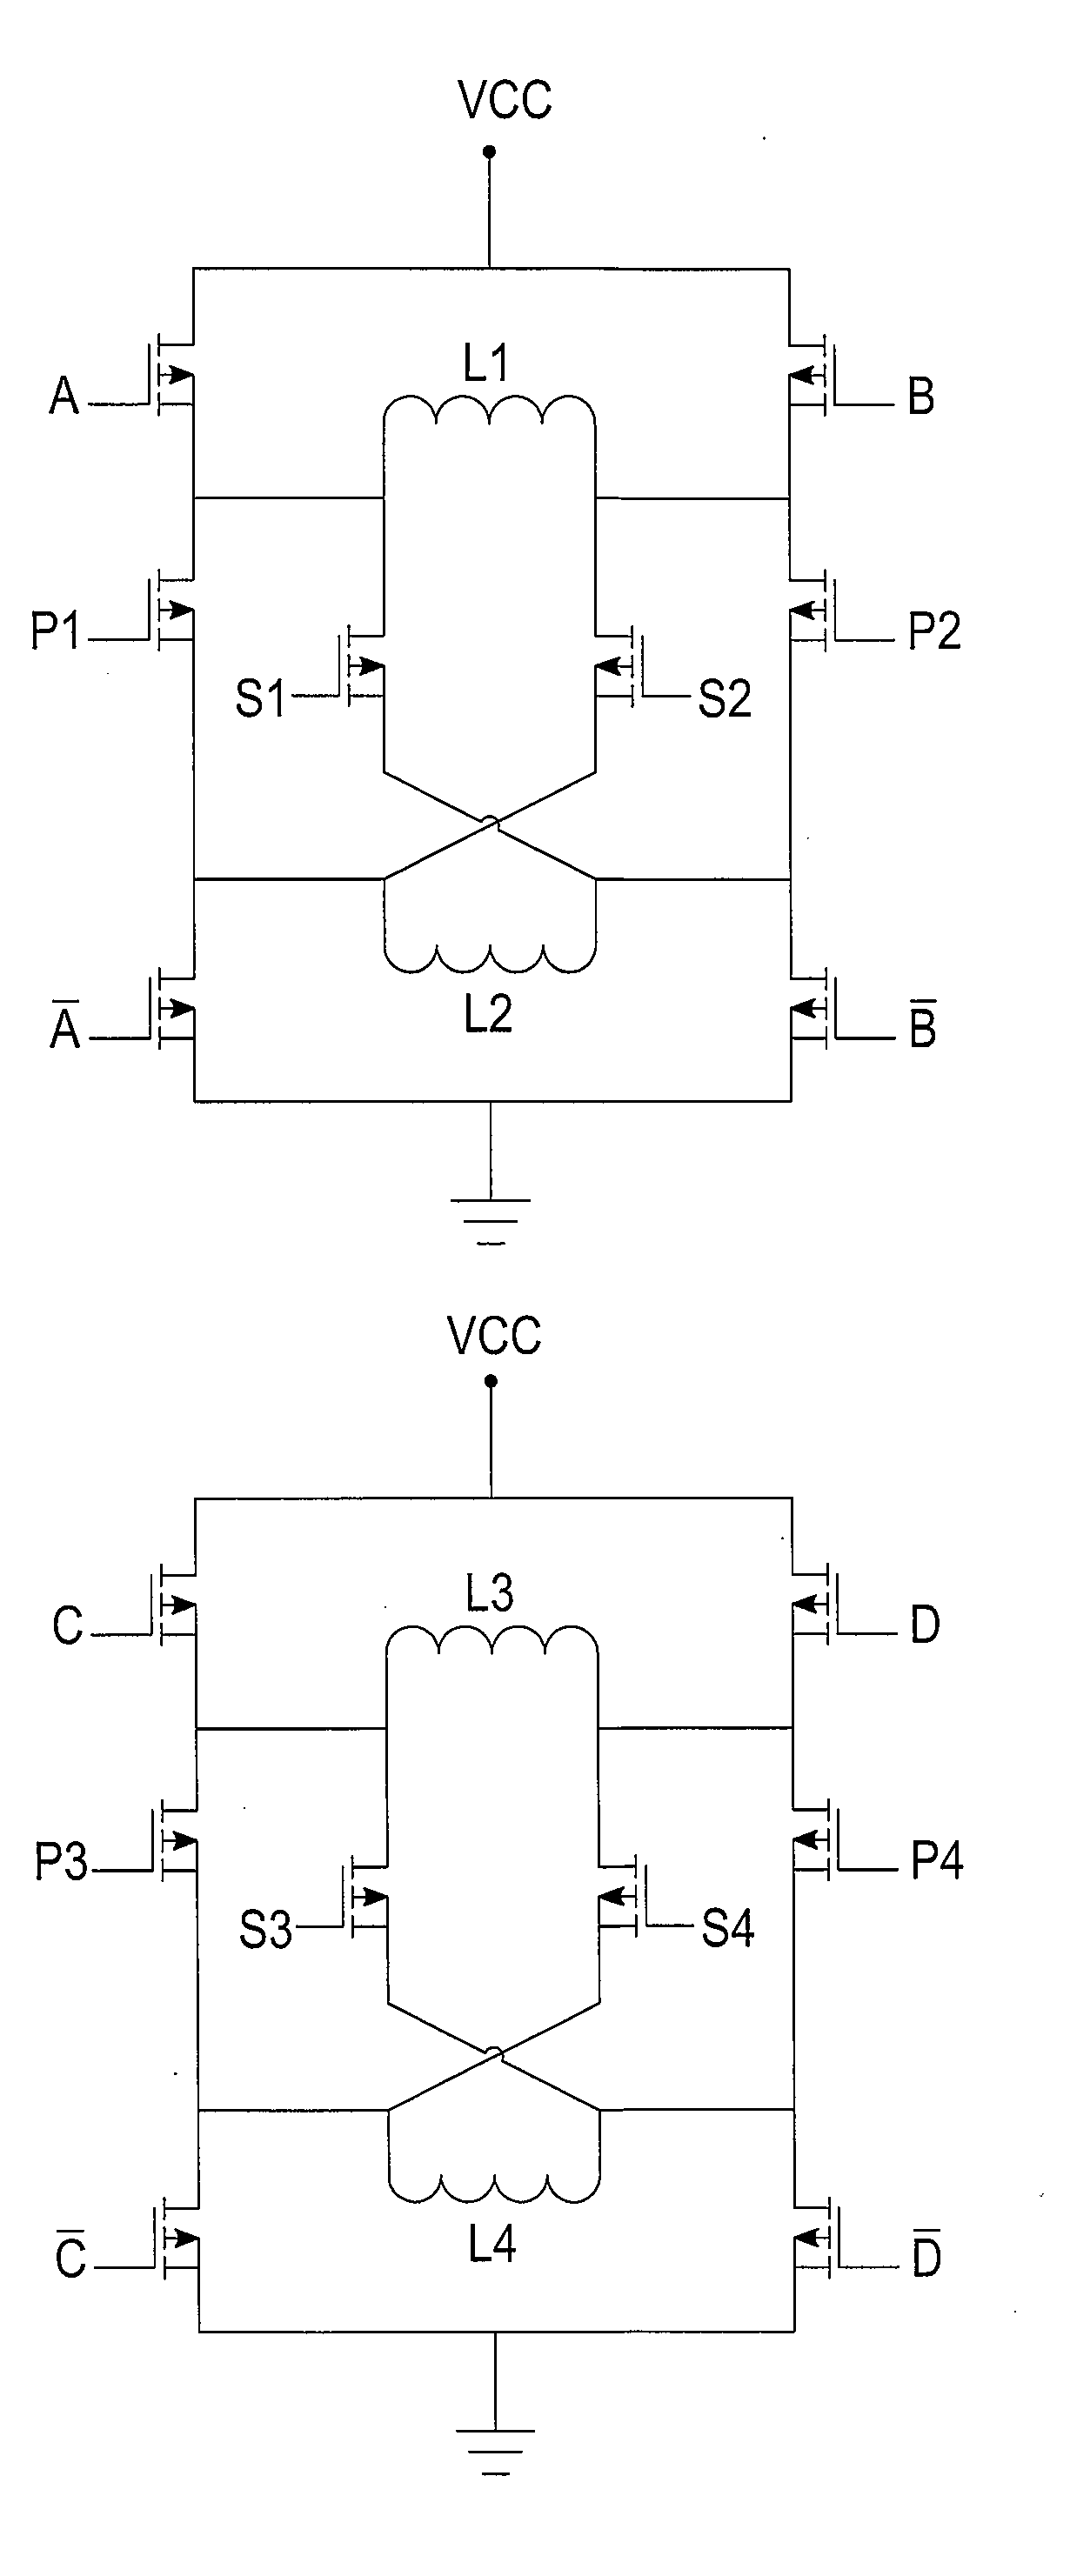 H-bridge drive circuit for step motor control